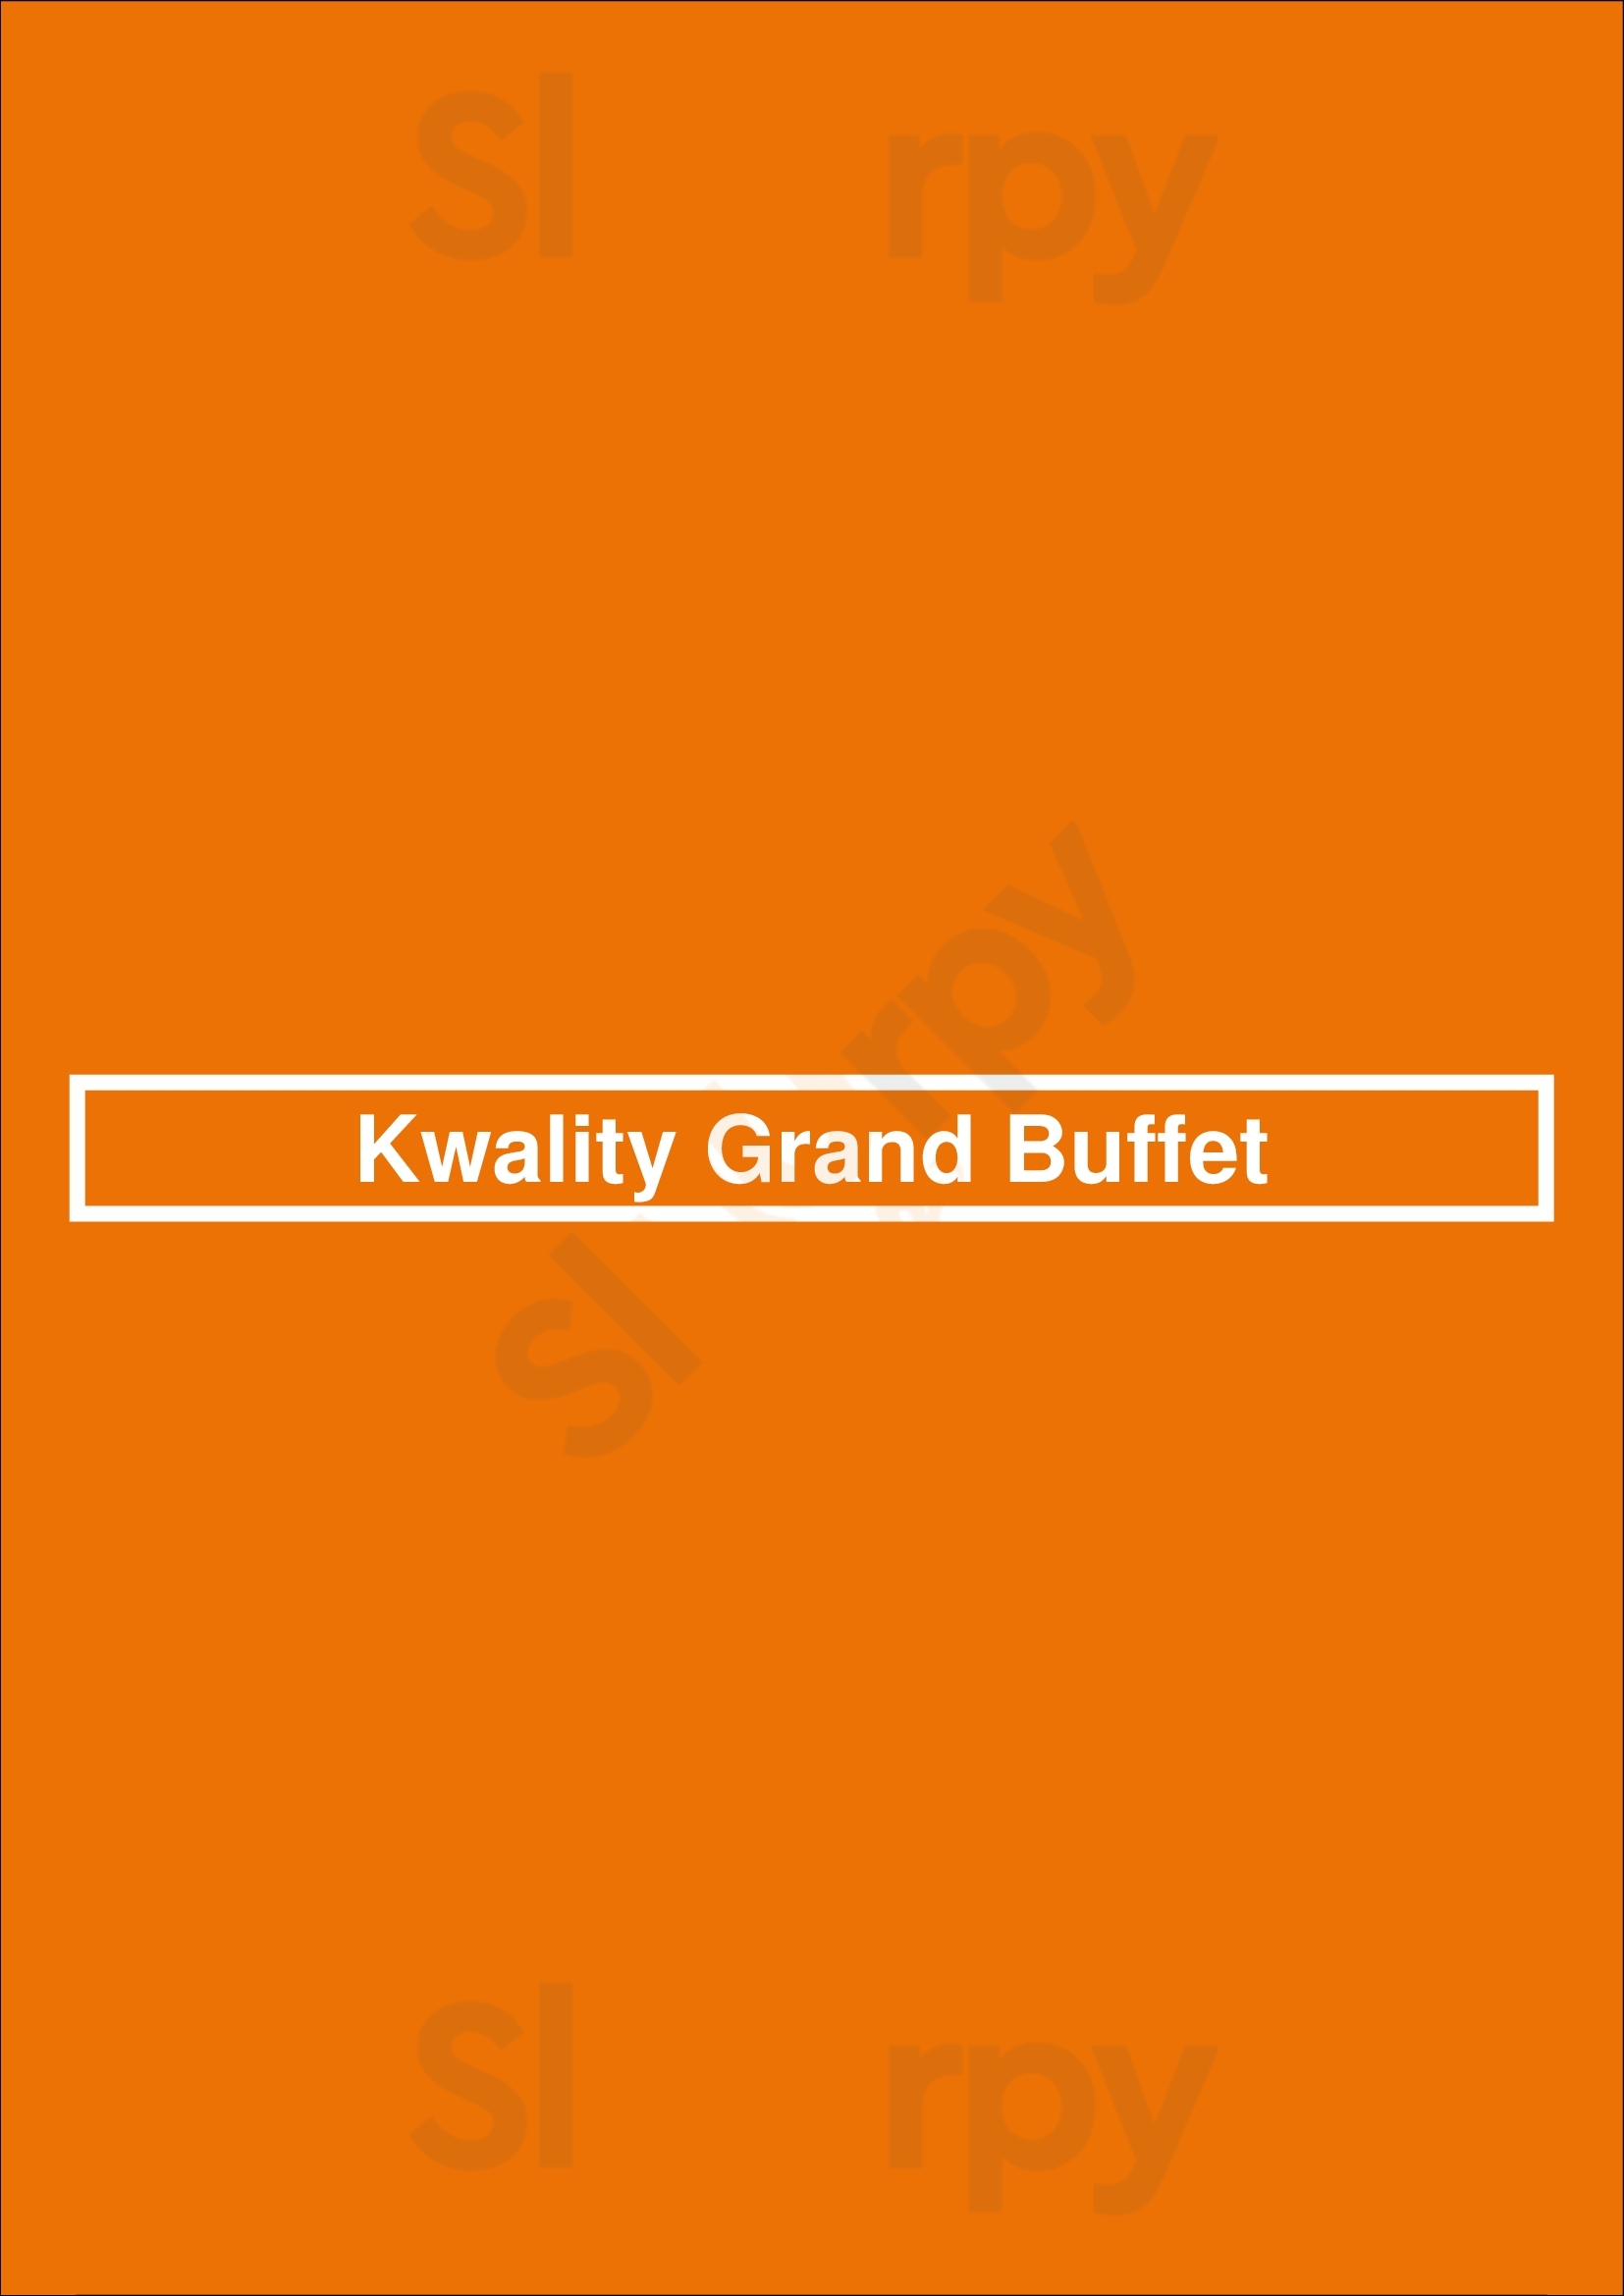 Kwality Grand Buffet Mississauga Menu - 1